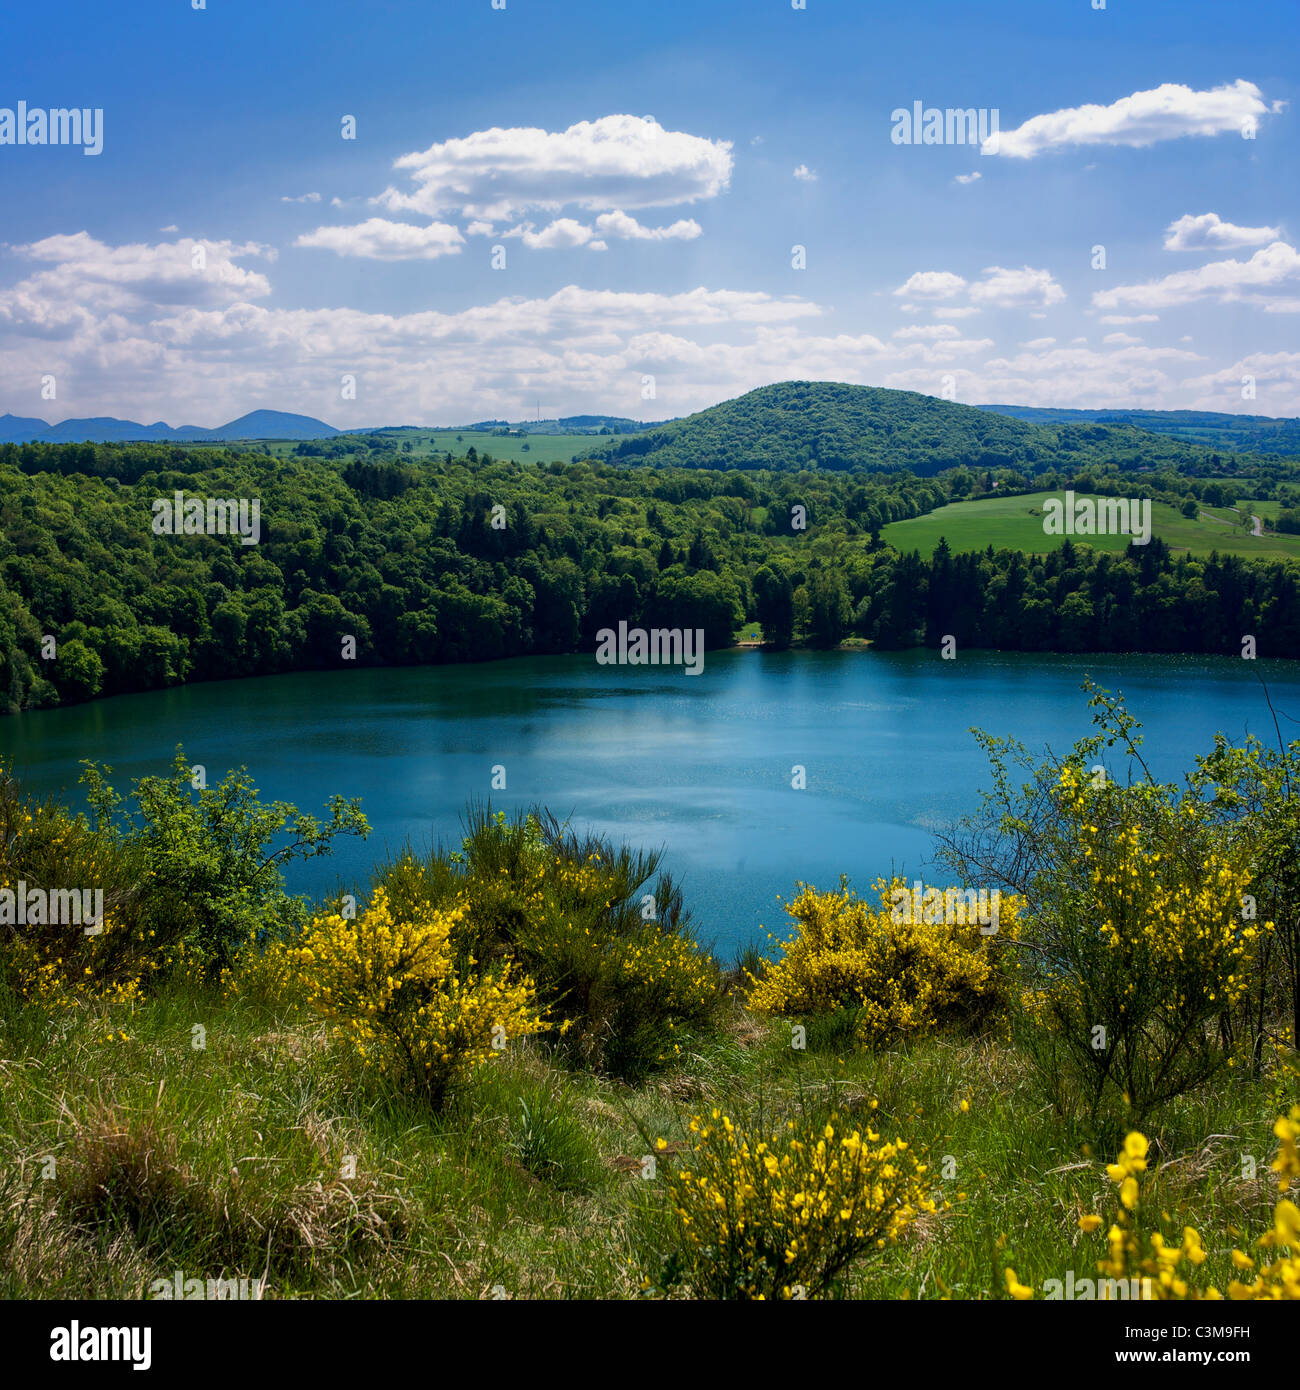 Gour de Tazenat, a volcanic lake in Puy-de-Dome, Auvergne, France Stock Photo